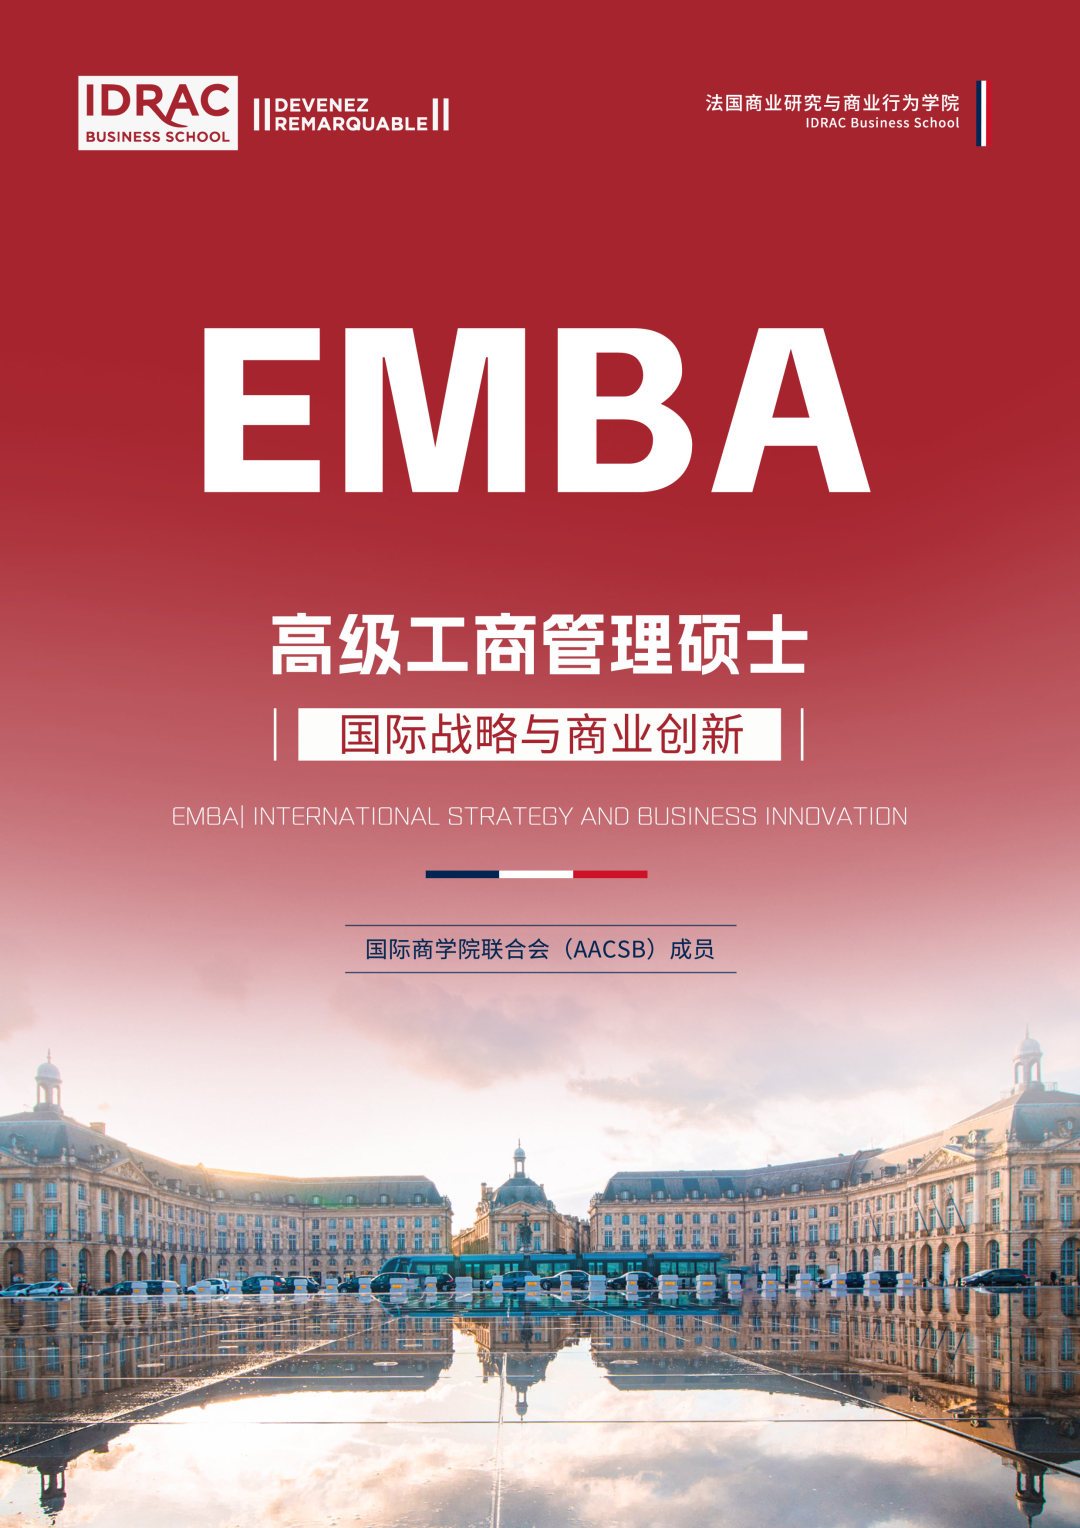 法国IDRAC高等商学院EMBA项目